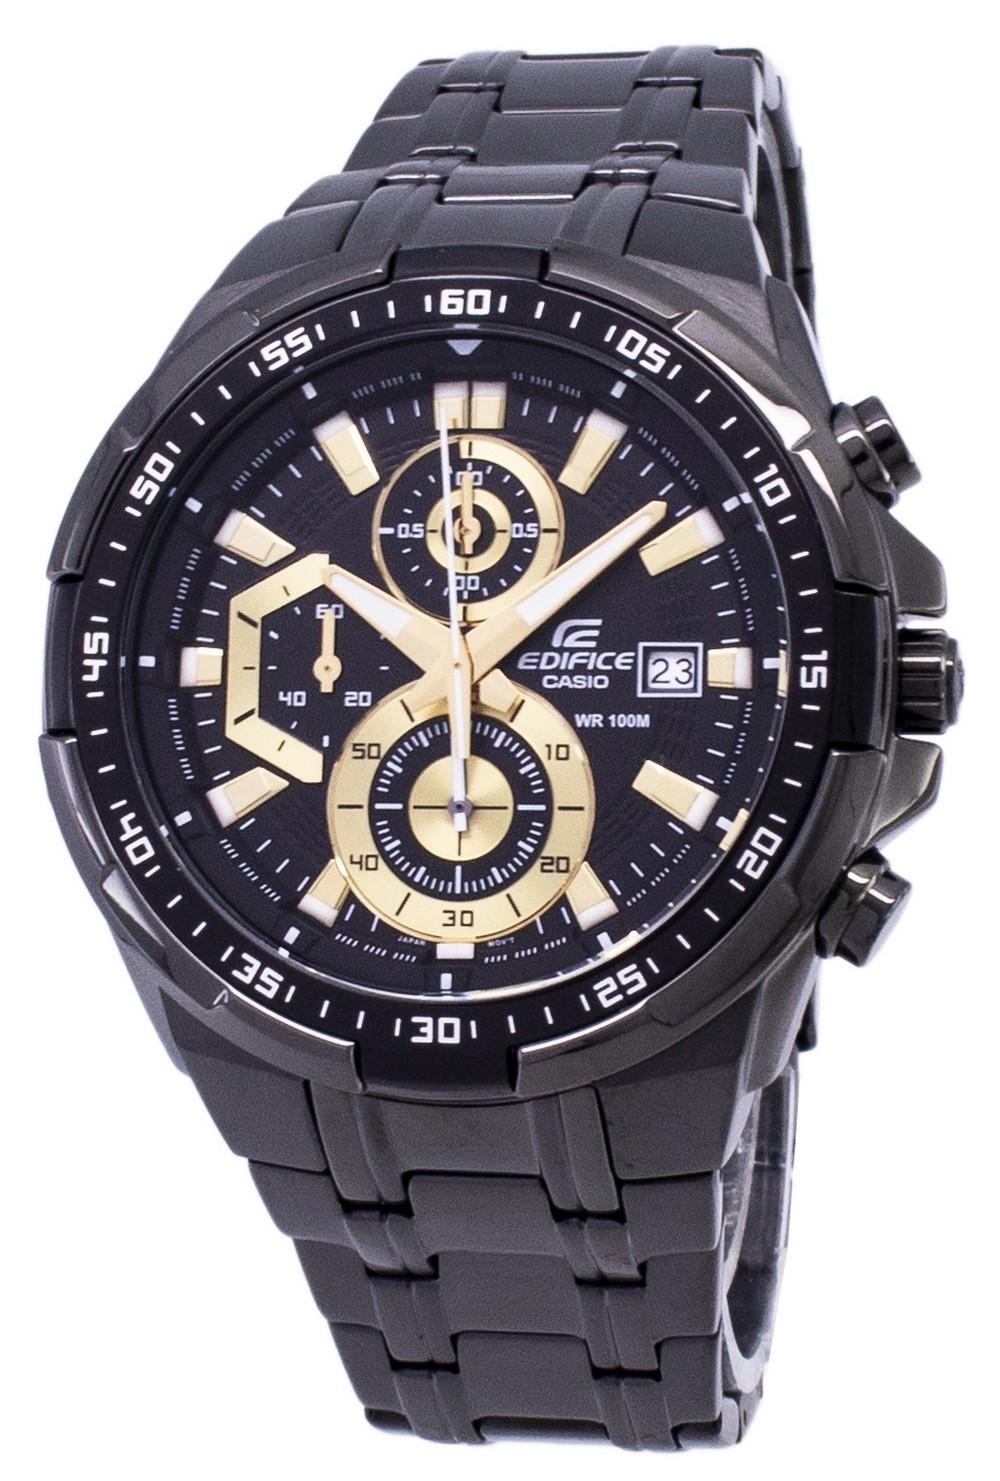 Casio Edifice Chronograph Quartz EFR-539BK-1AV EFR539BK-1AV Men's Watch